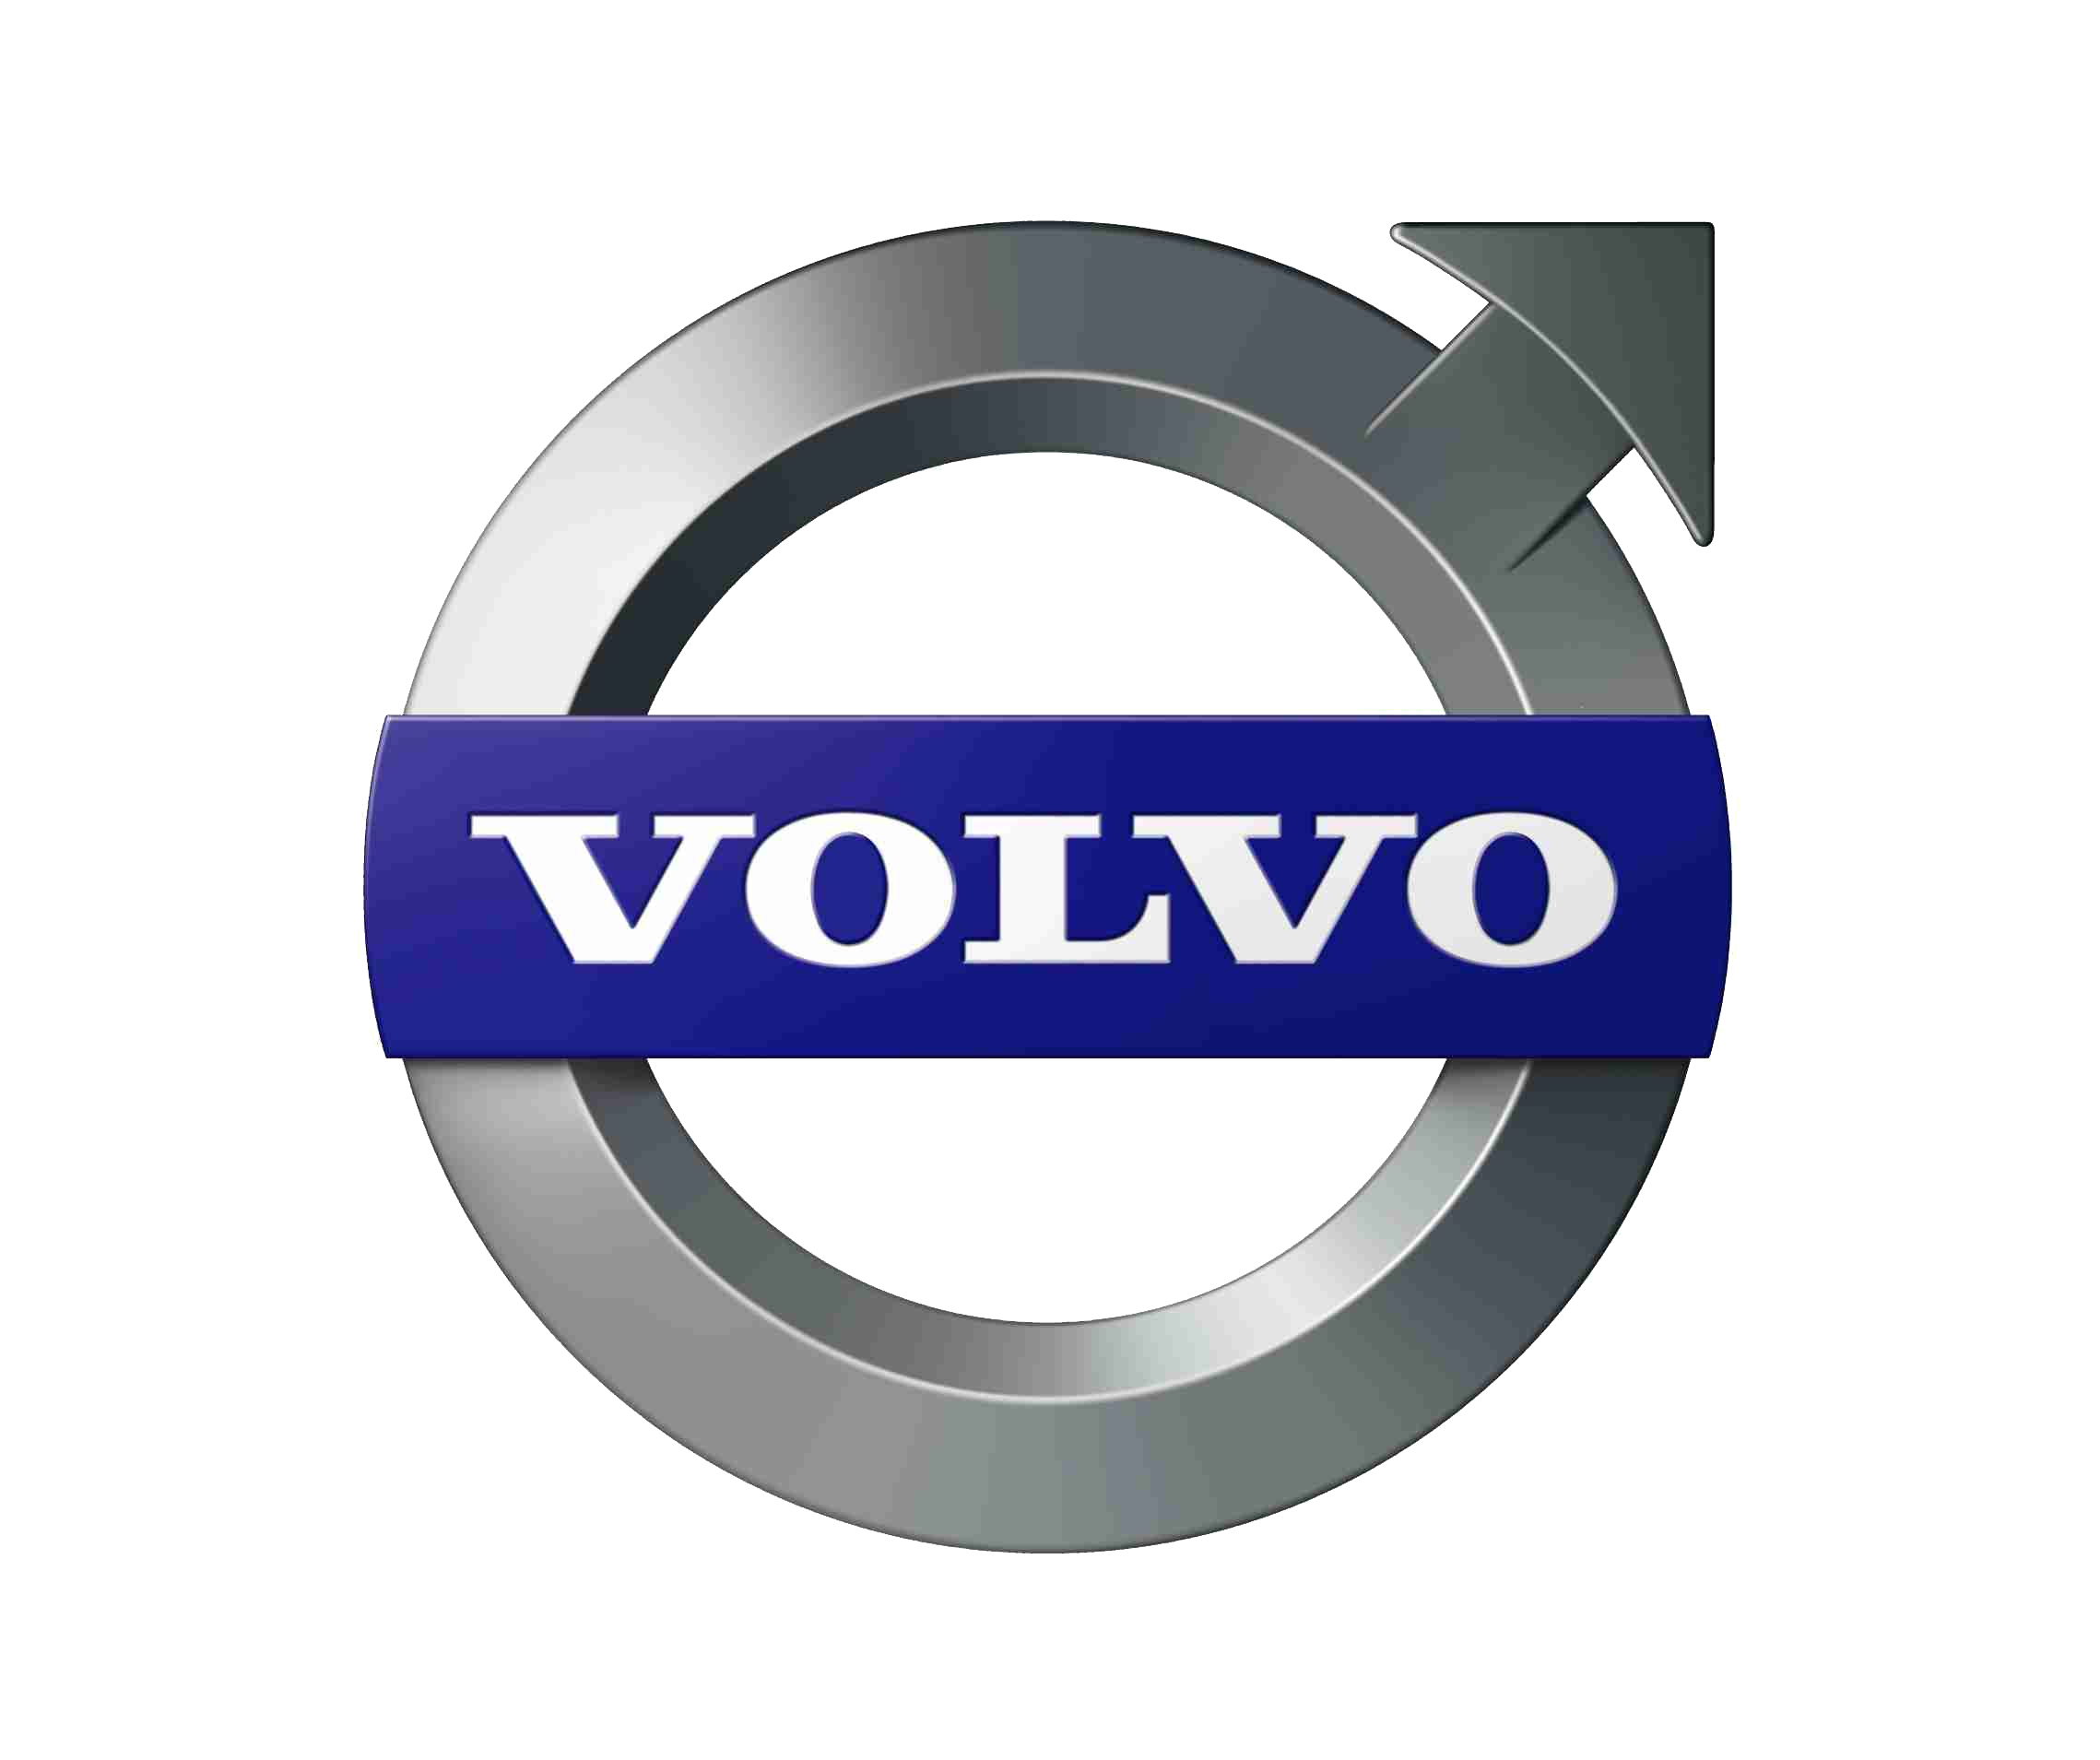 Volvo Logo PNG Image